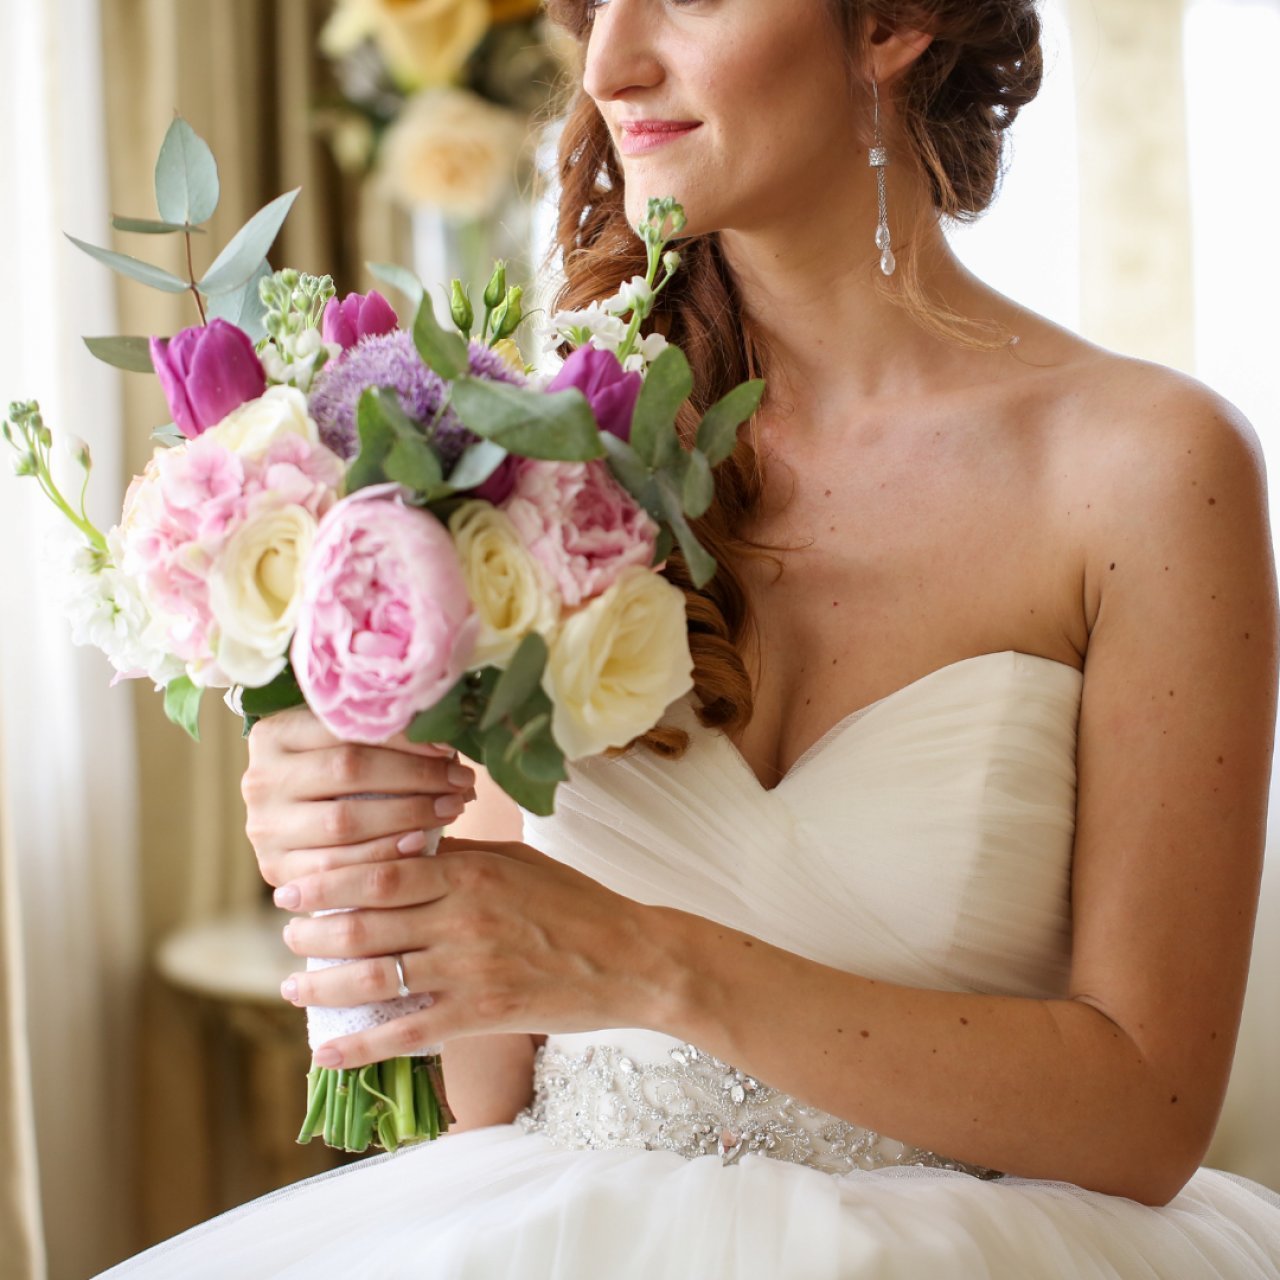 Matrimonio: il bouquet della sposa, significato e tradizione - Ticinonline